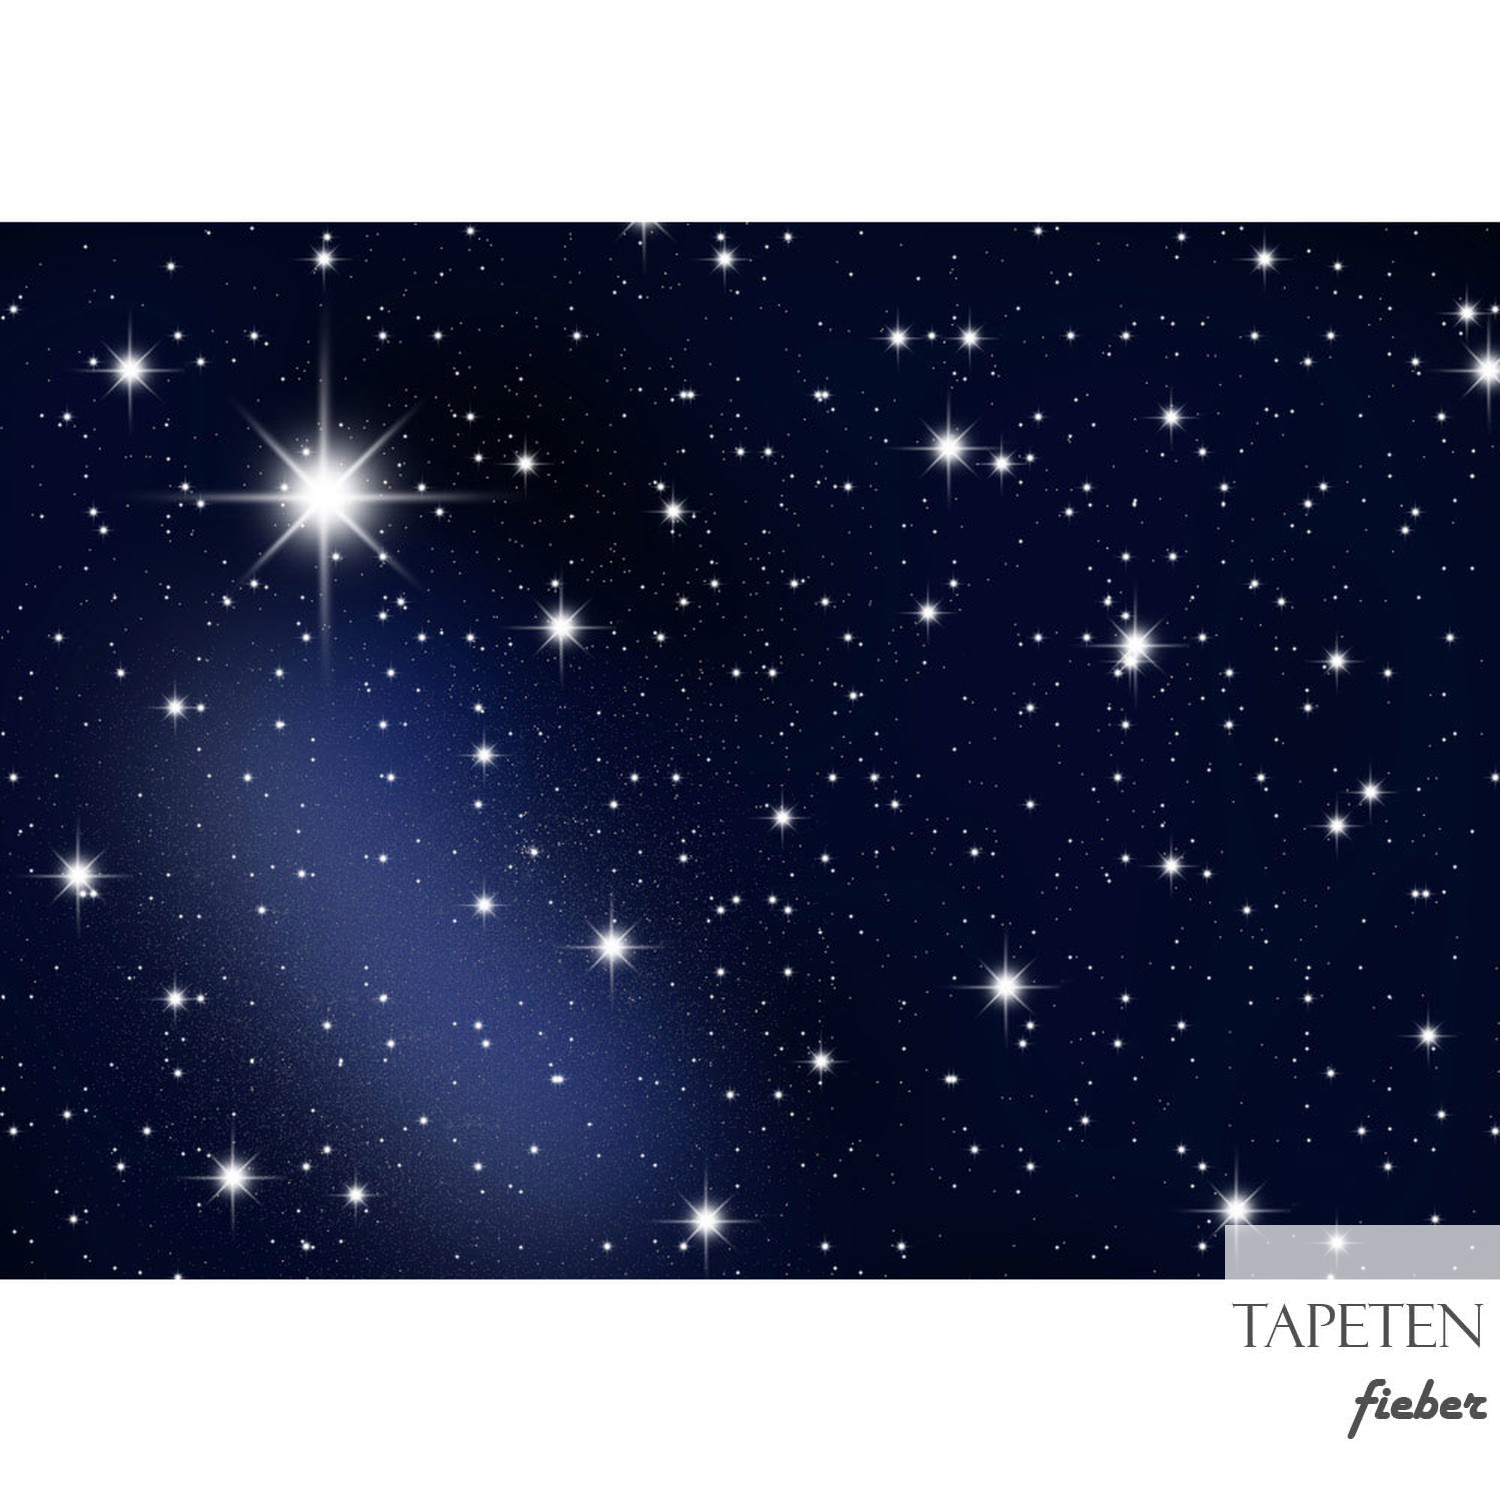 2, no. € Sterne Leuchtsterne Nachthimmel 39,95 Fototapete Sternenhimmel Stars